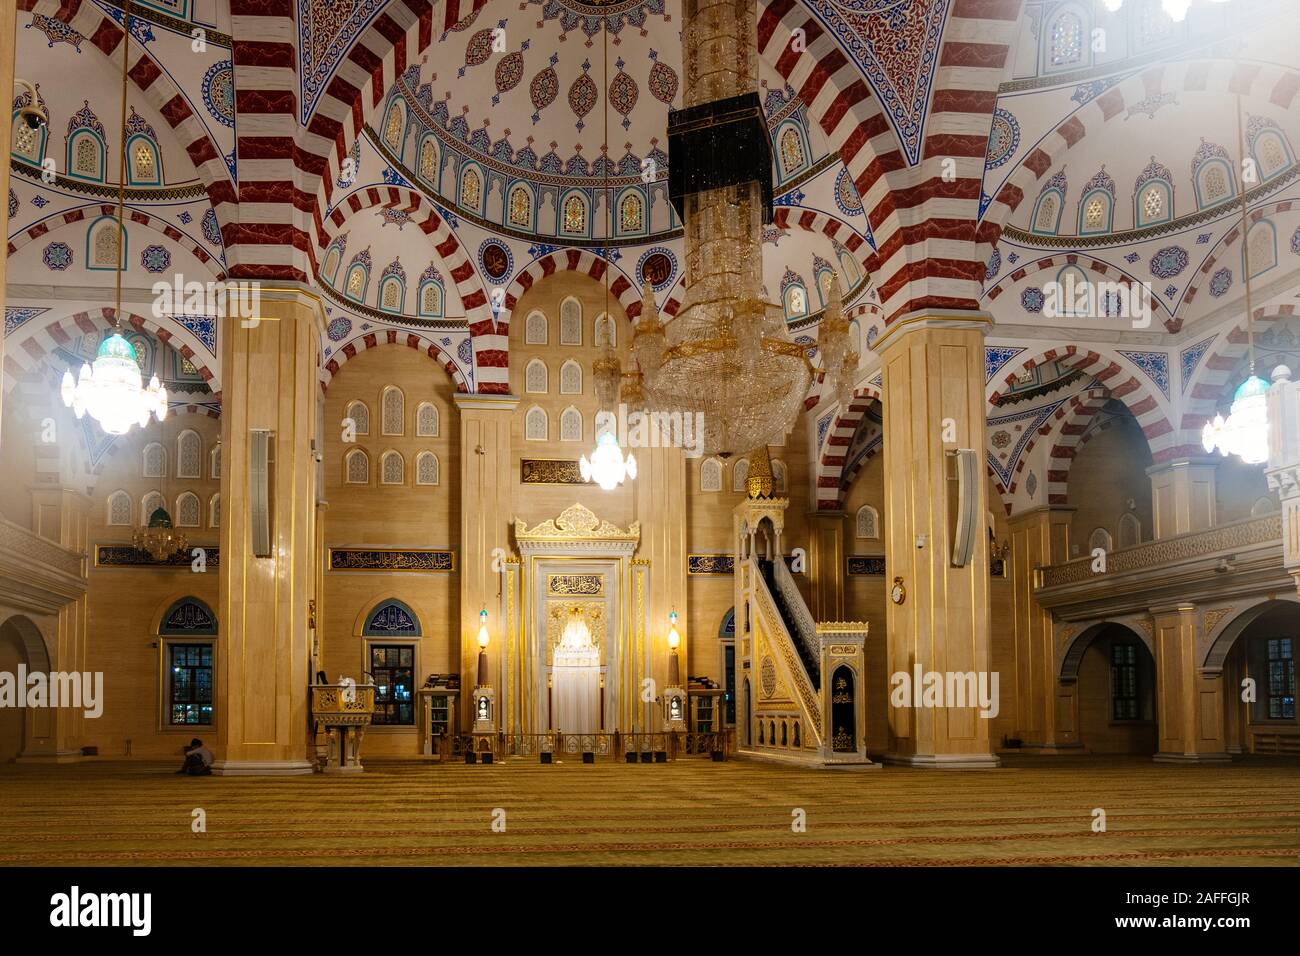 Innenraum von Ahmad Kadyrow Moschee mitten in Tschetschenien Stockfoto